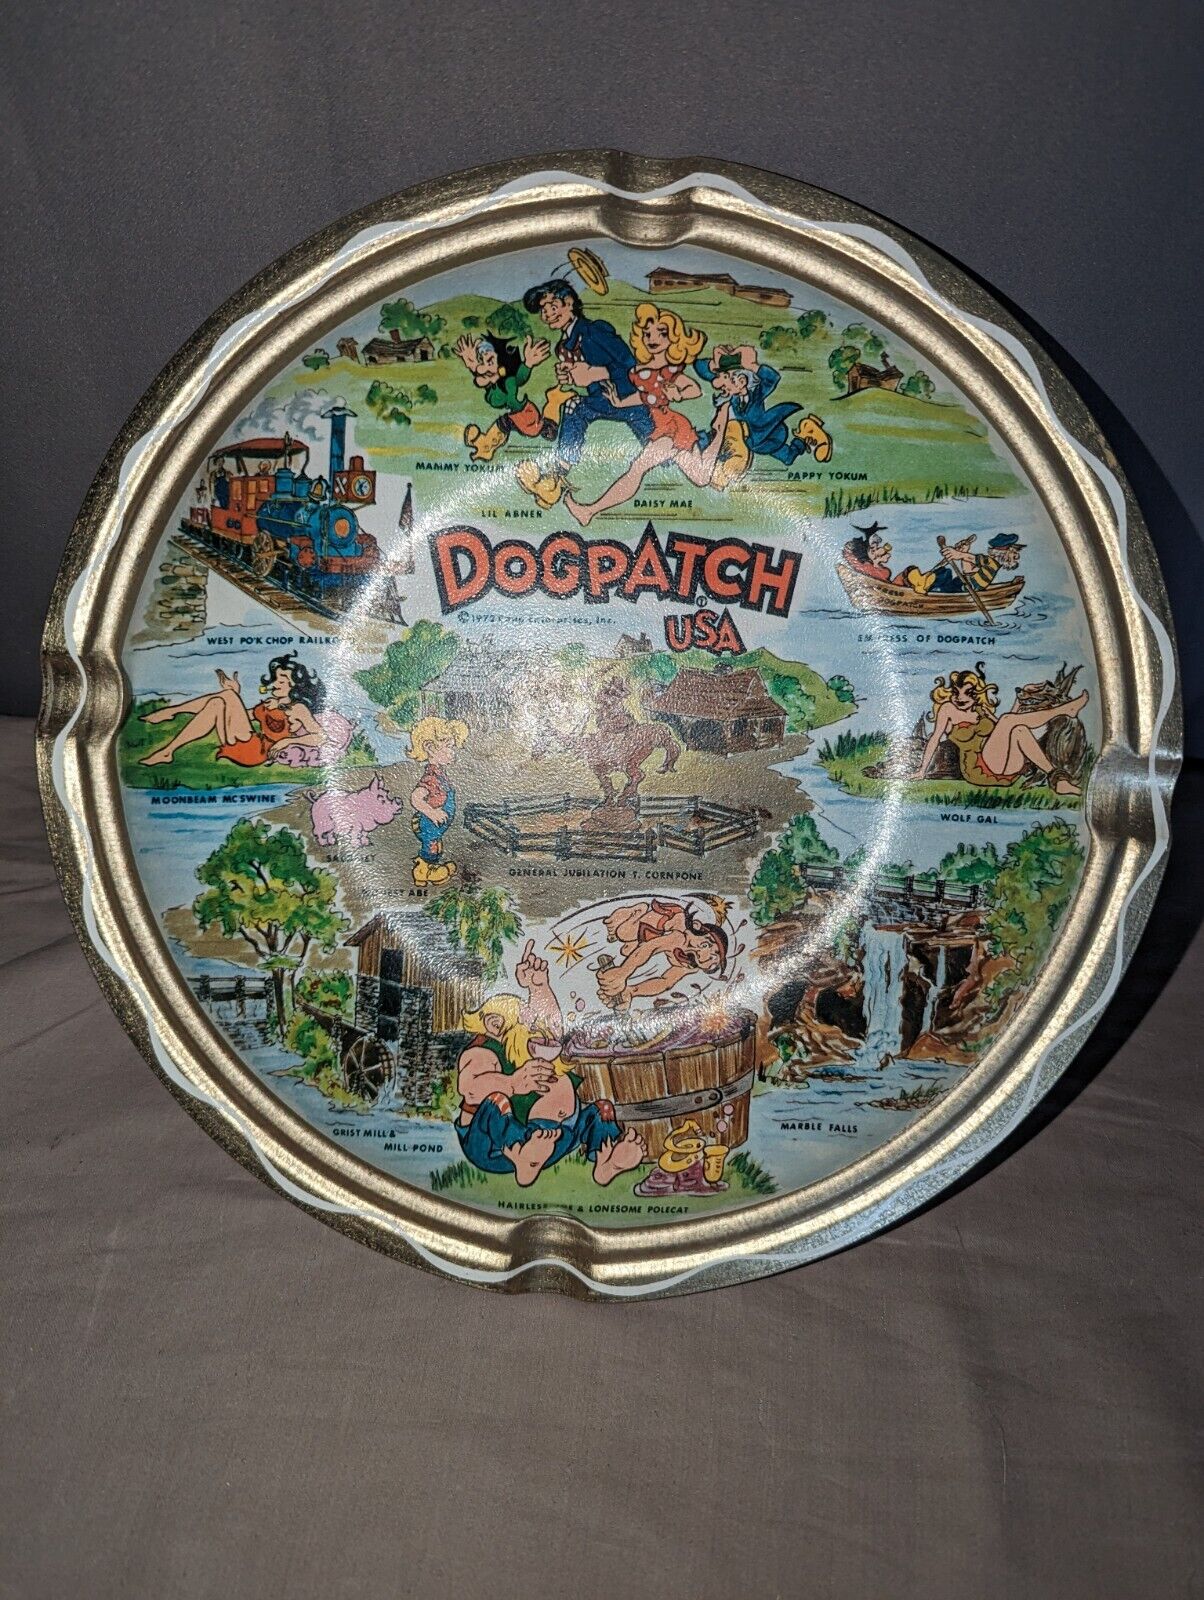 Vintage Dogpatch Ashtray Amusement Park Souvenir 1972 Capp Enterprise USA